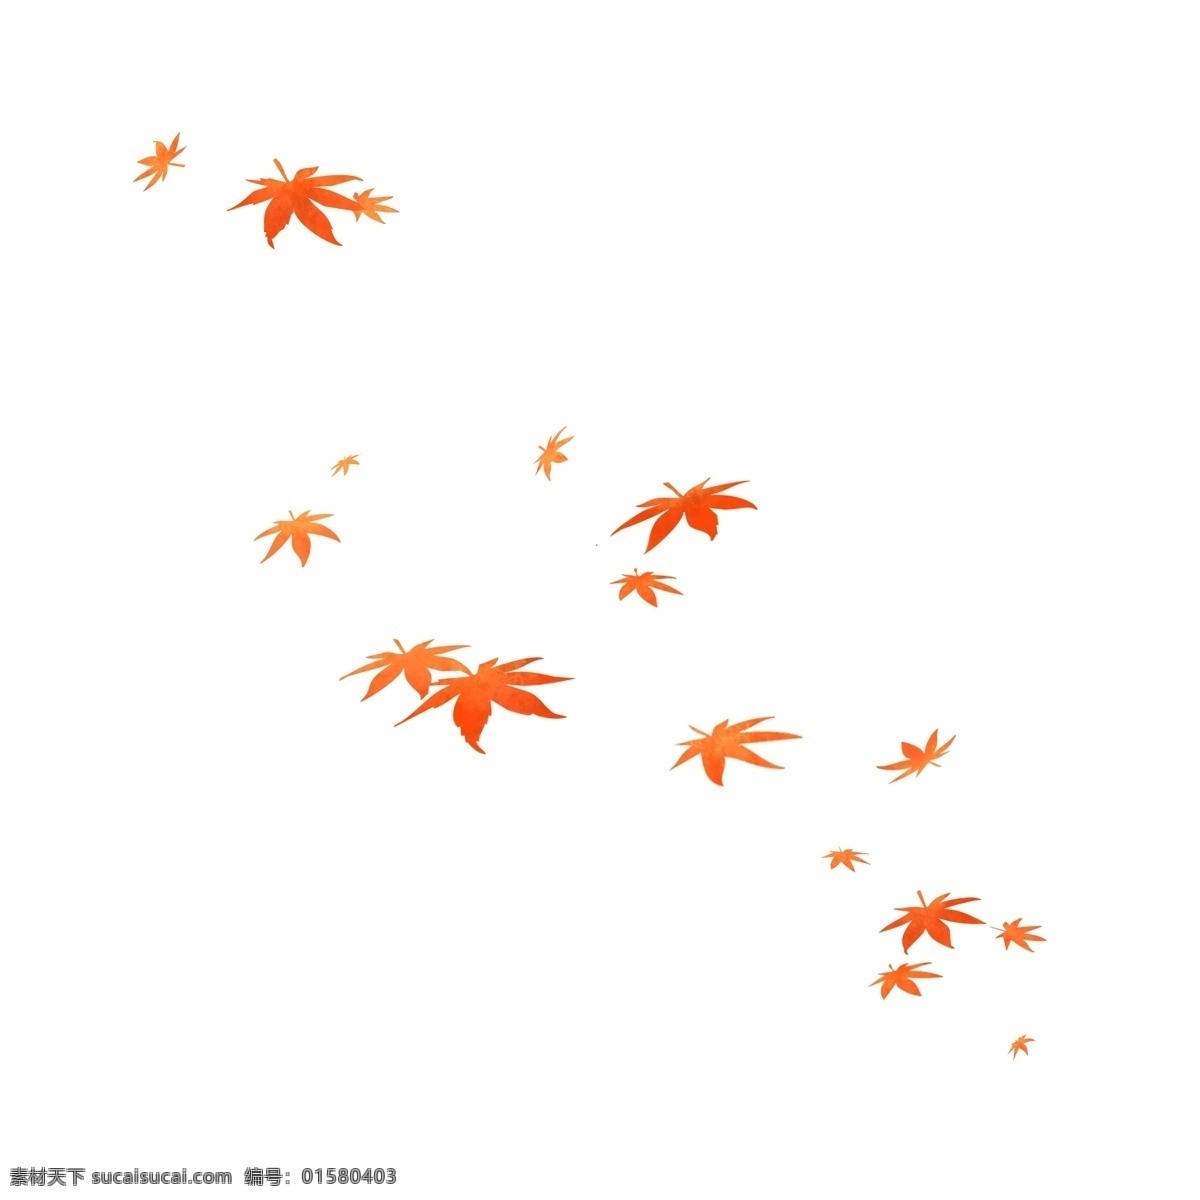 枫叶图片 枫叶 树叶 枝叶 叶子 红色 红色叶子 红色枫叶 枫树 秋天 秋季 装饰 点缀 飘落 素材图